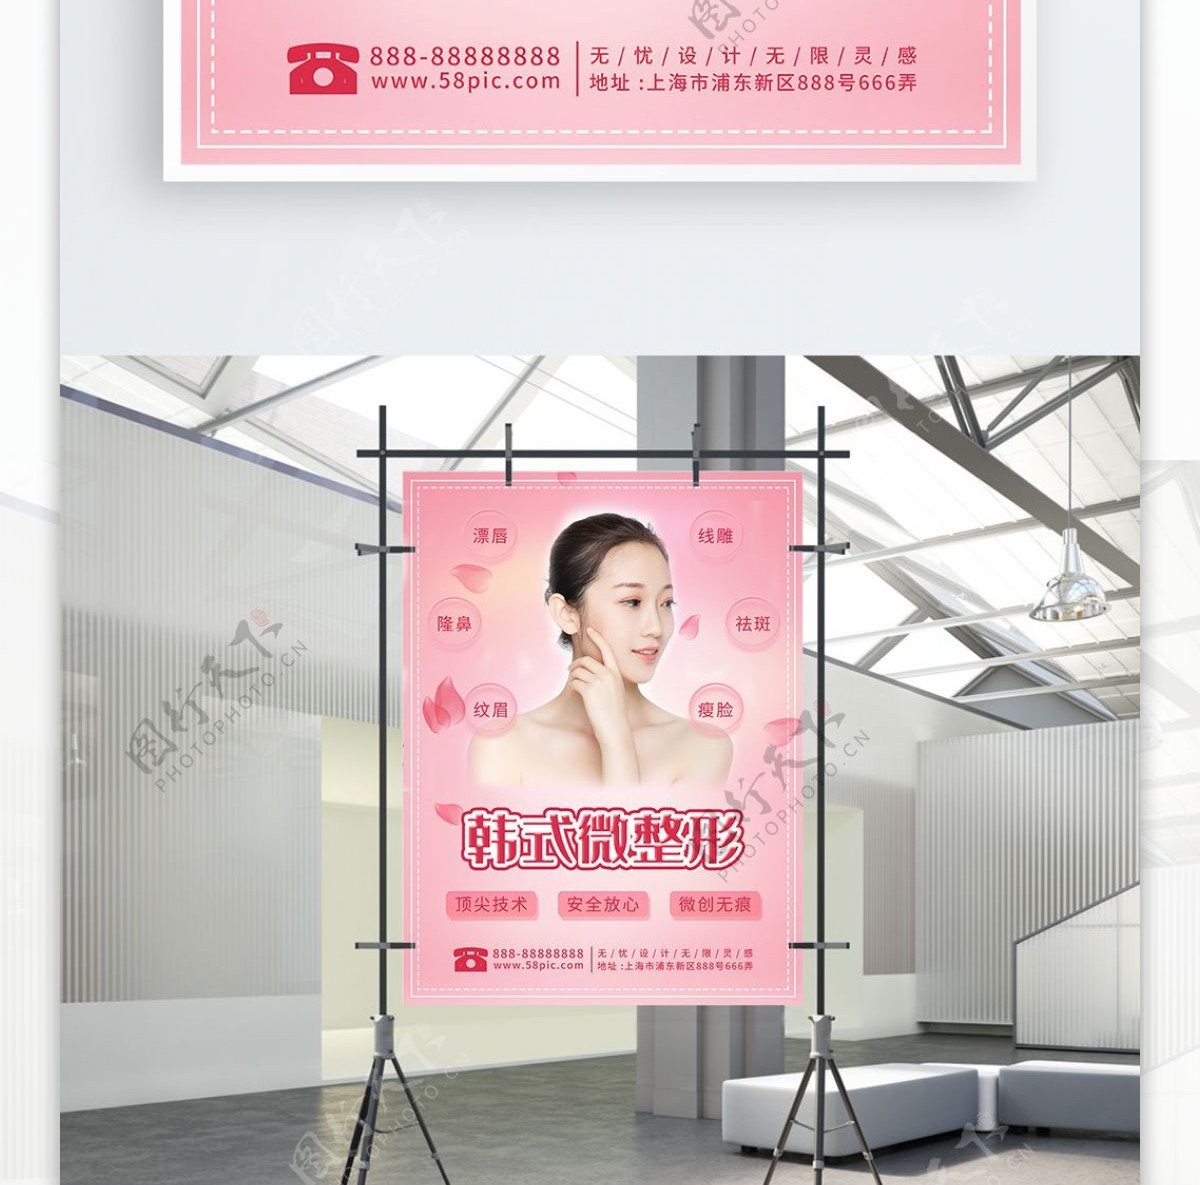 韩式微整形粉色浪漫海报